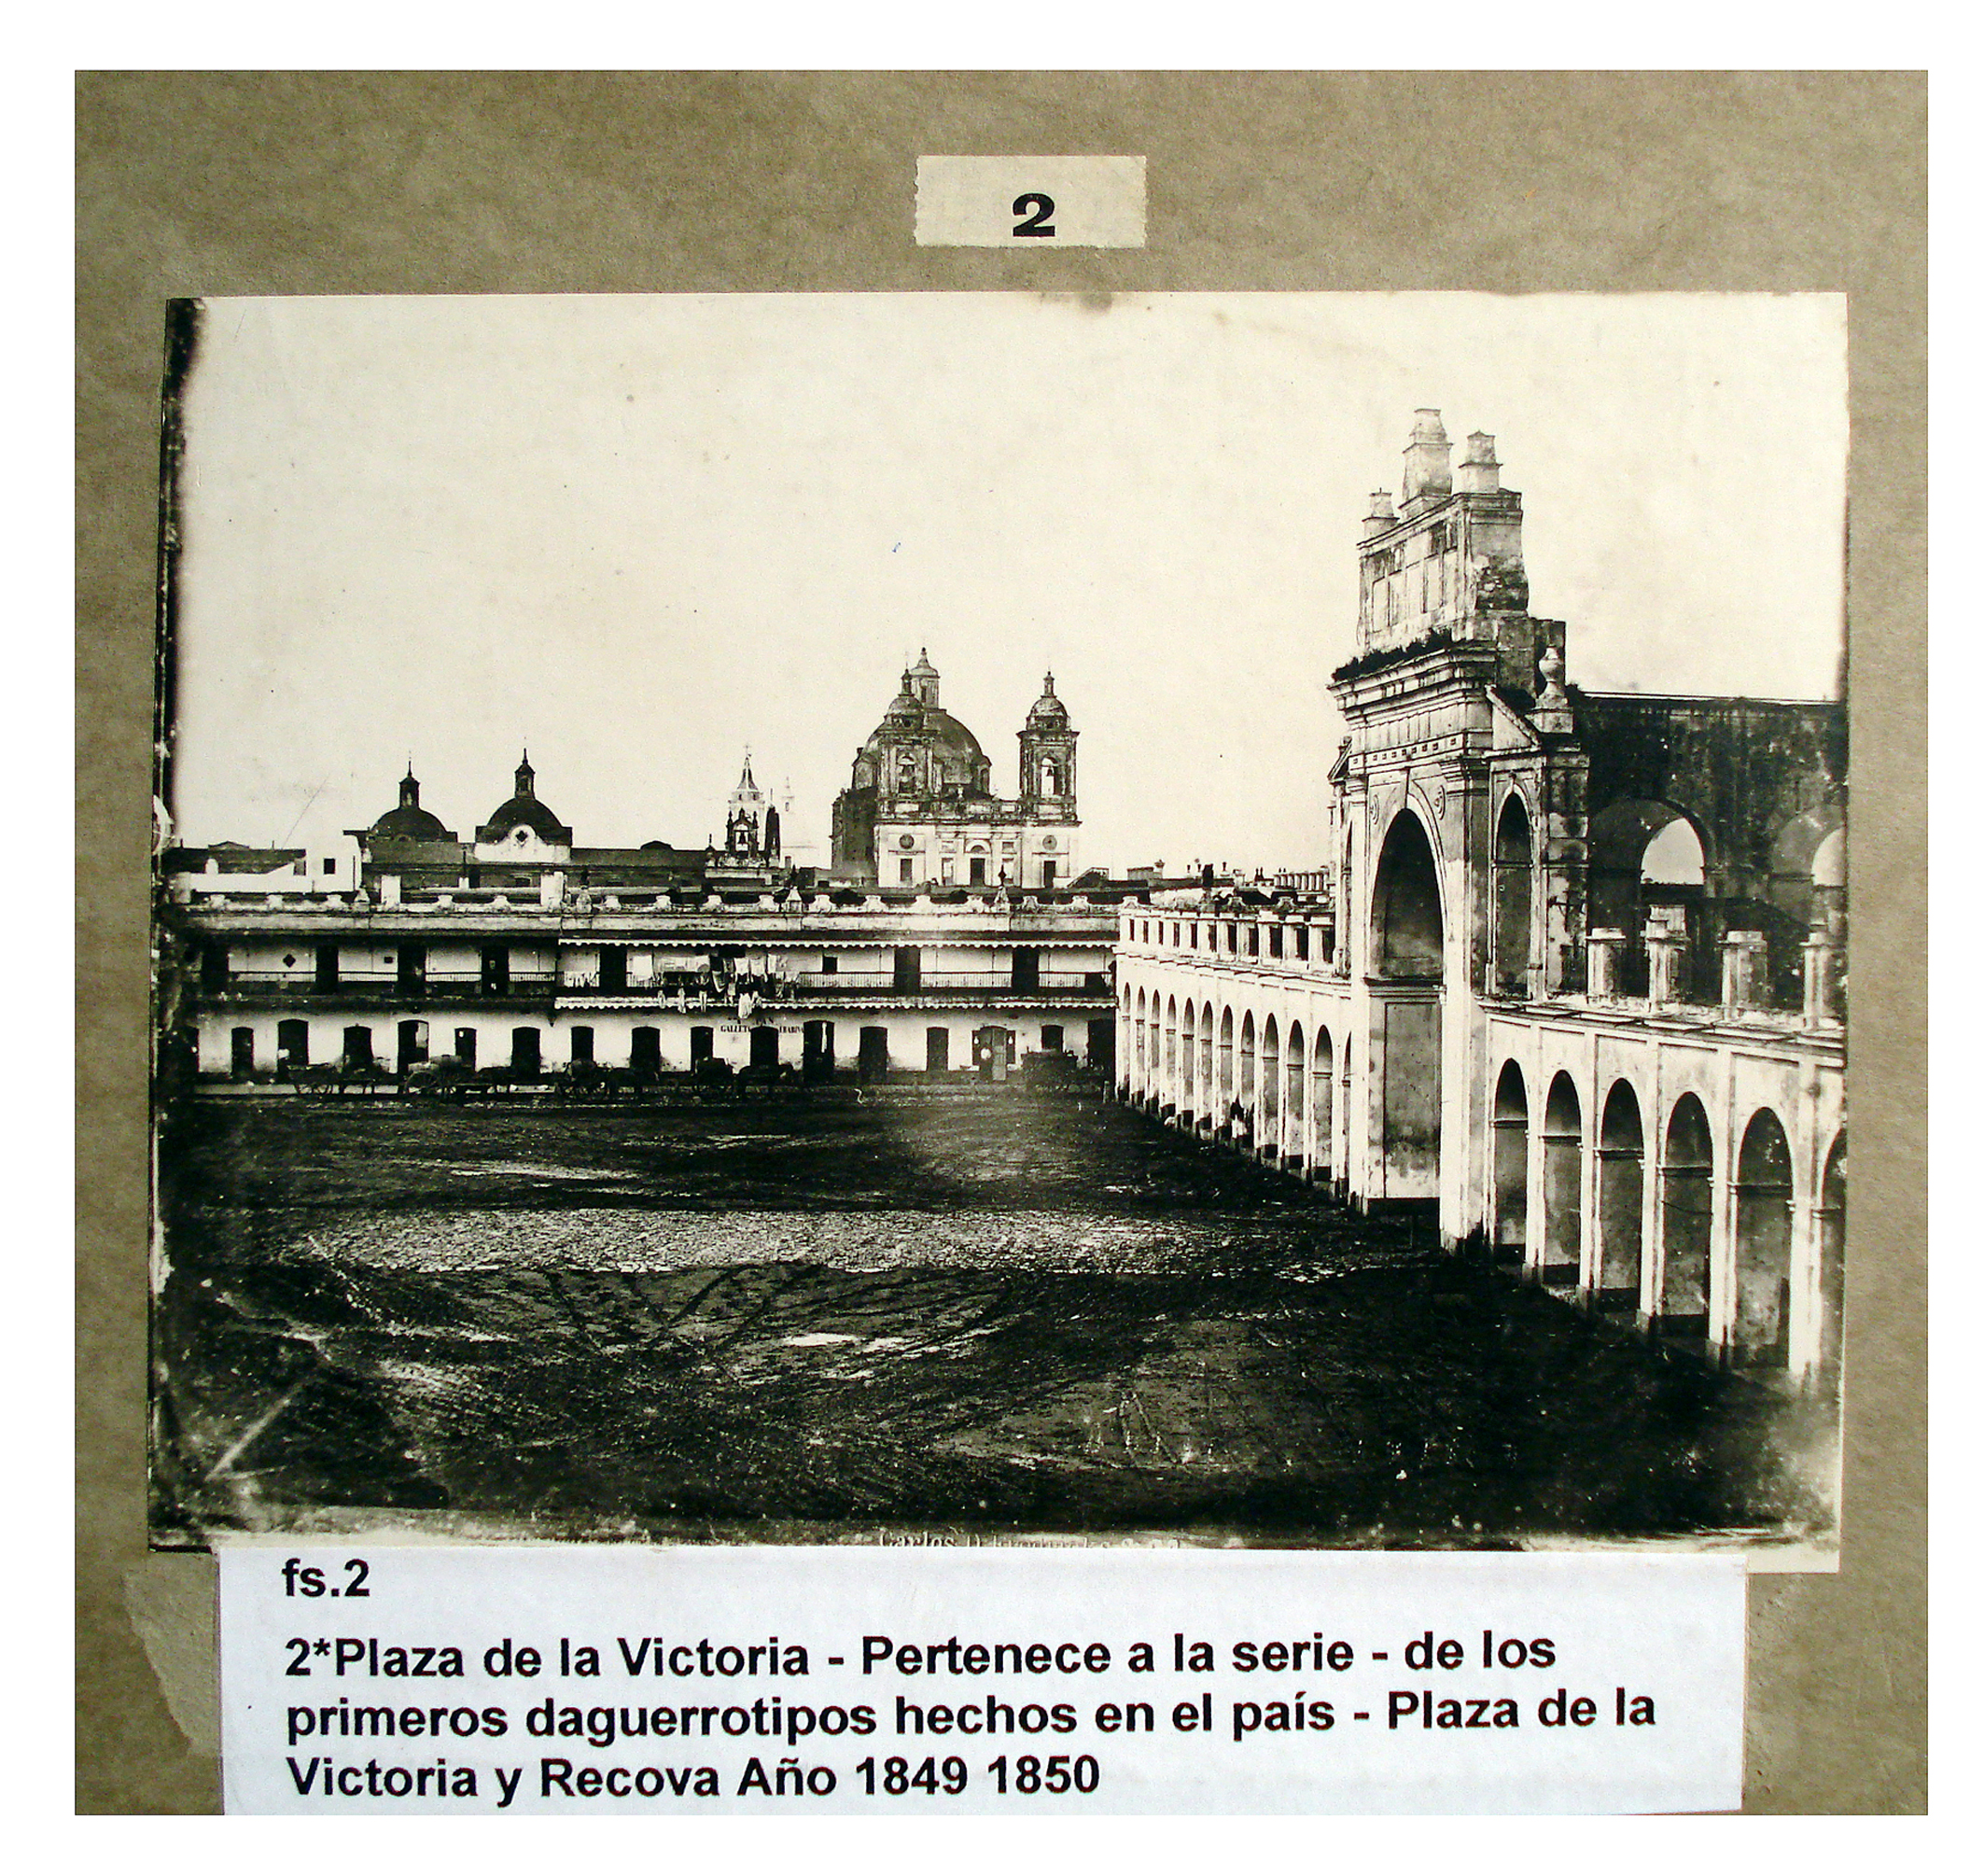 Plaza de la Victoria y Recova entre 1849 y 1850